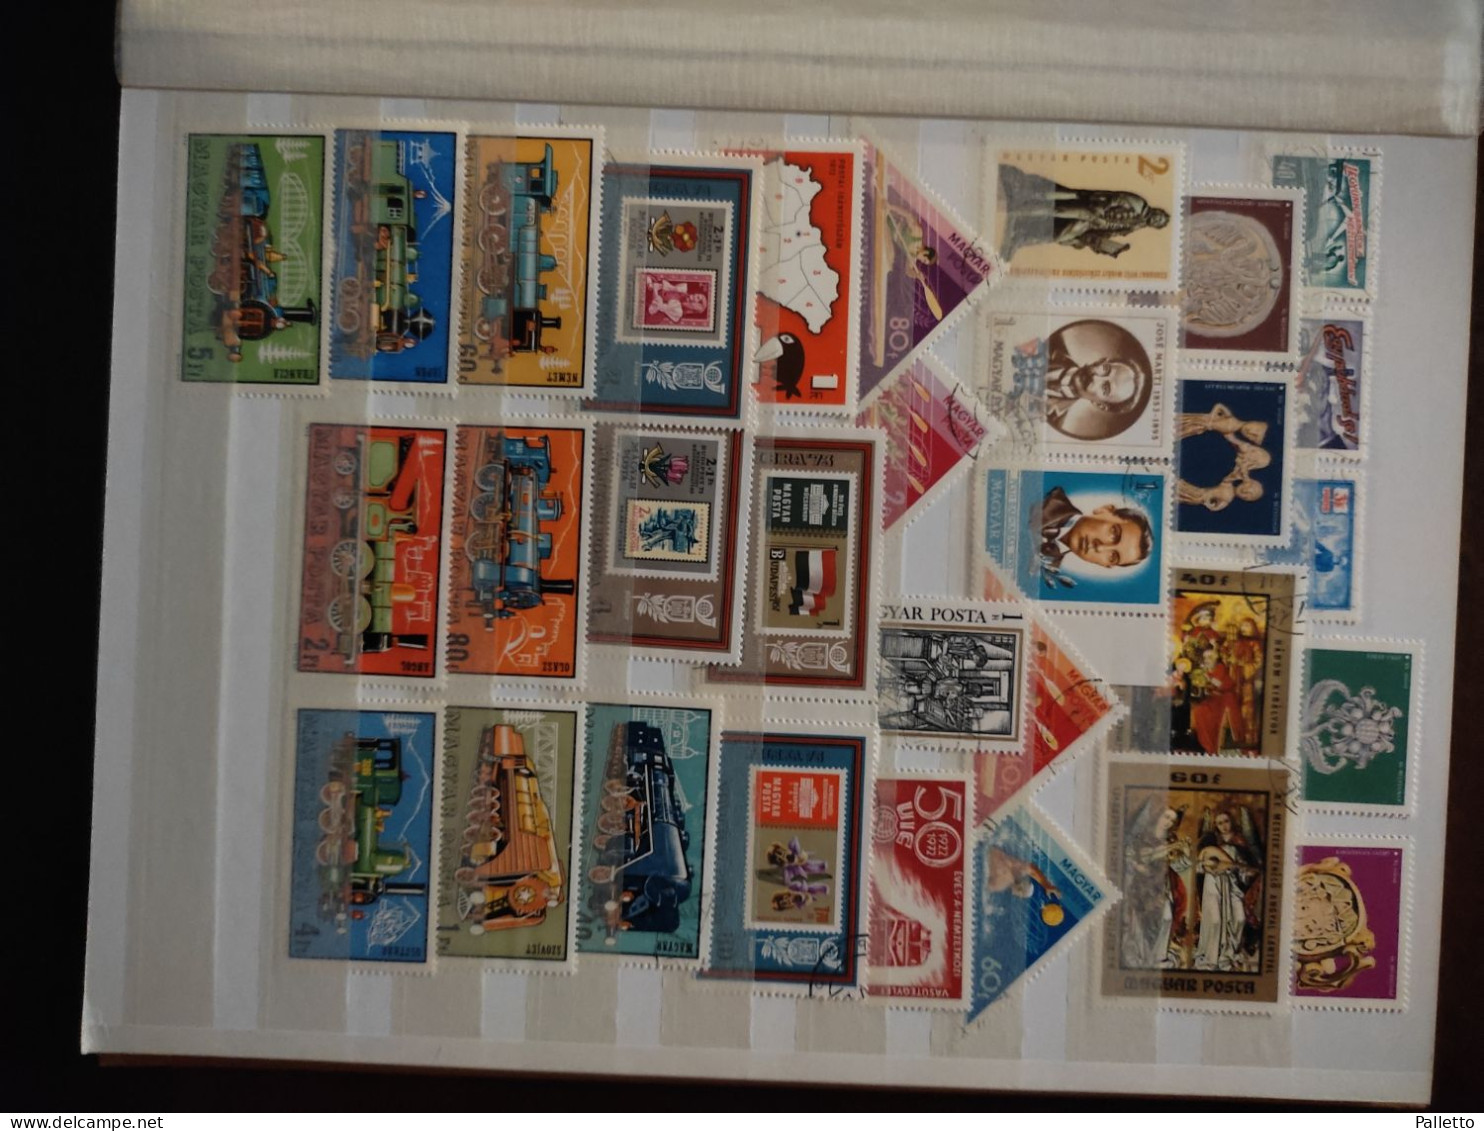 Francobolli di Ungheria anni 60-80 nuovi ed usati compreso raccoglitore 32 facciate in ottimo stato